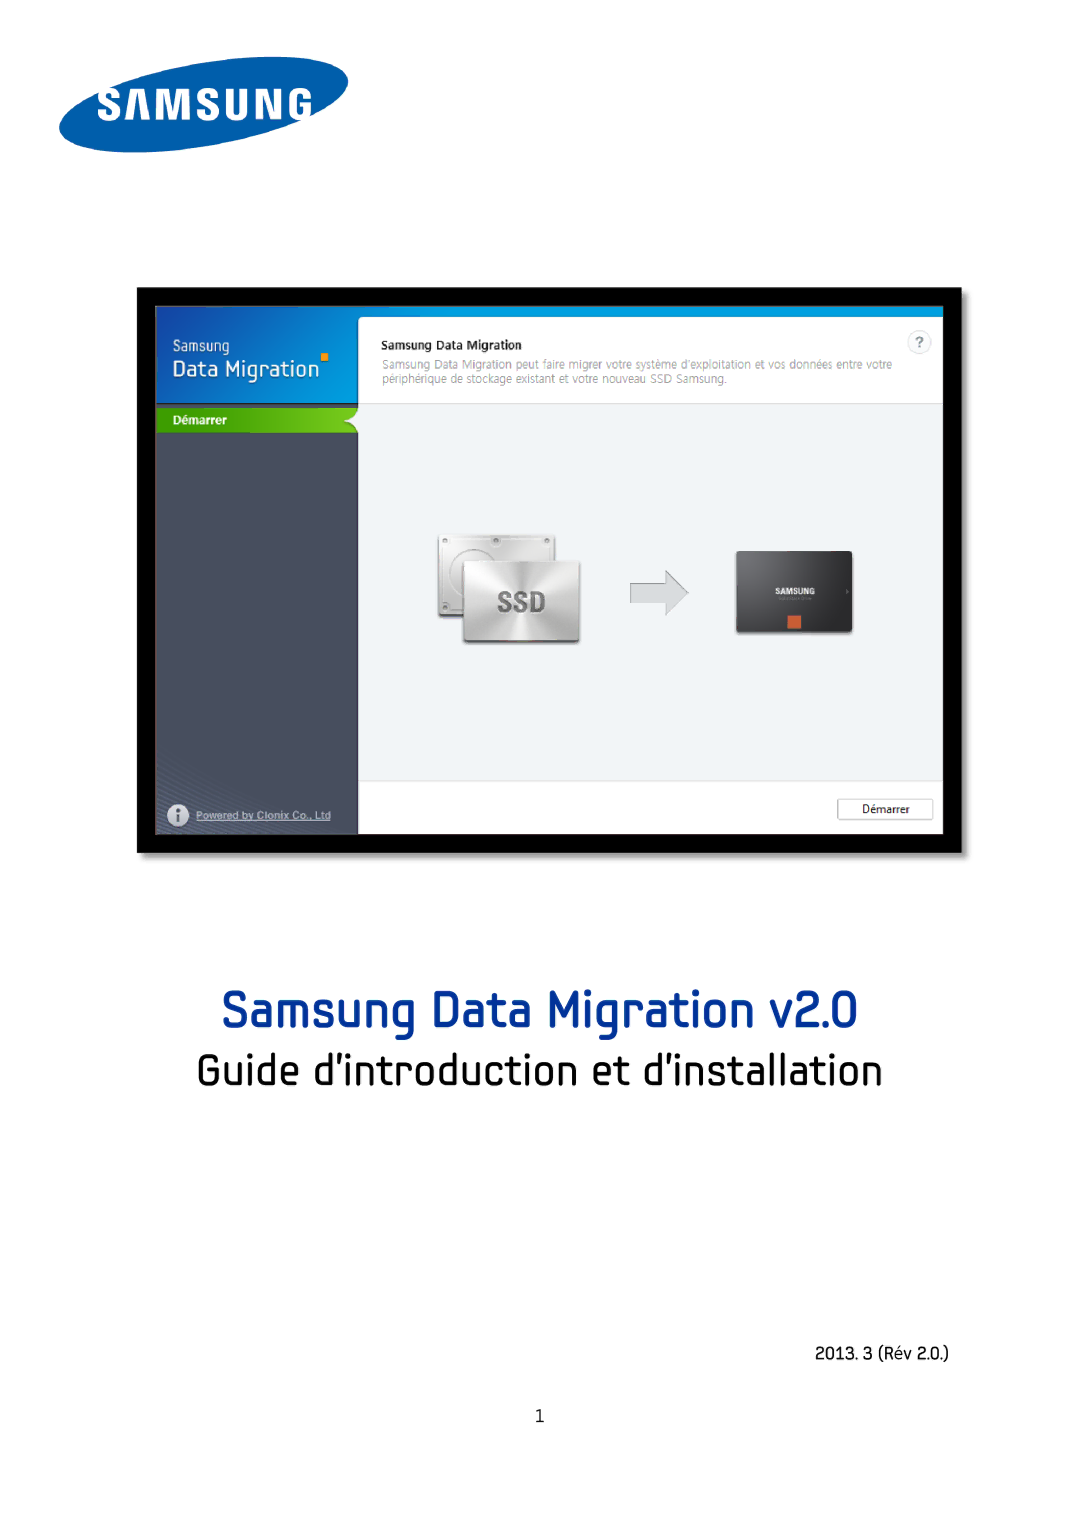 Samsung MZ-7PC512D/EU, MZ-7PC256D/EU, MZ-7PC128N/EU manual Samsung Solid State Drive Schnellstart-Benutzerhandbuch 